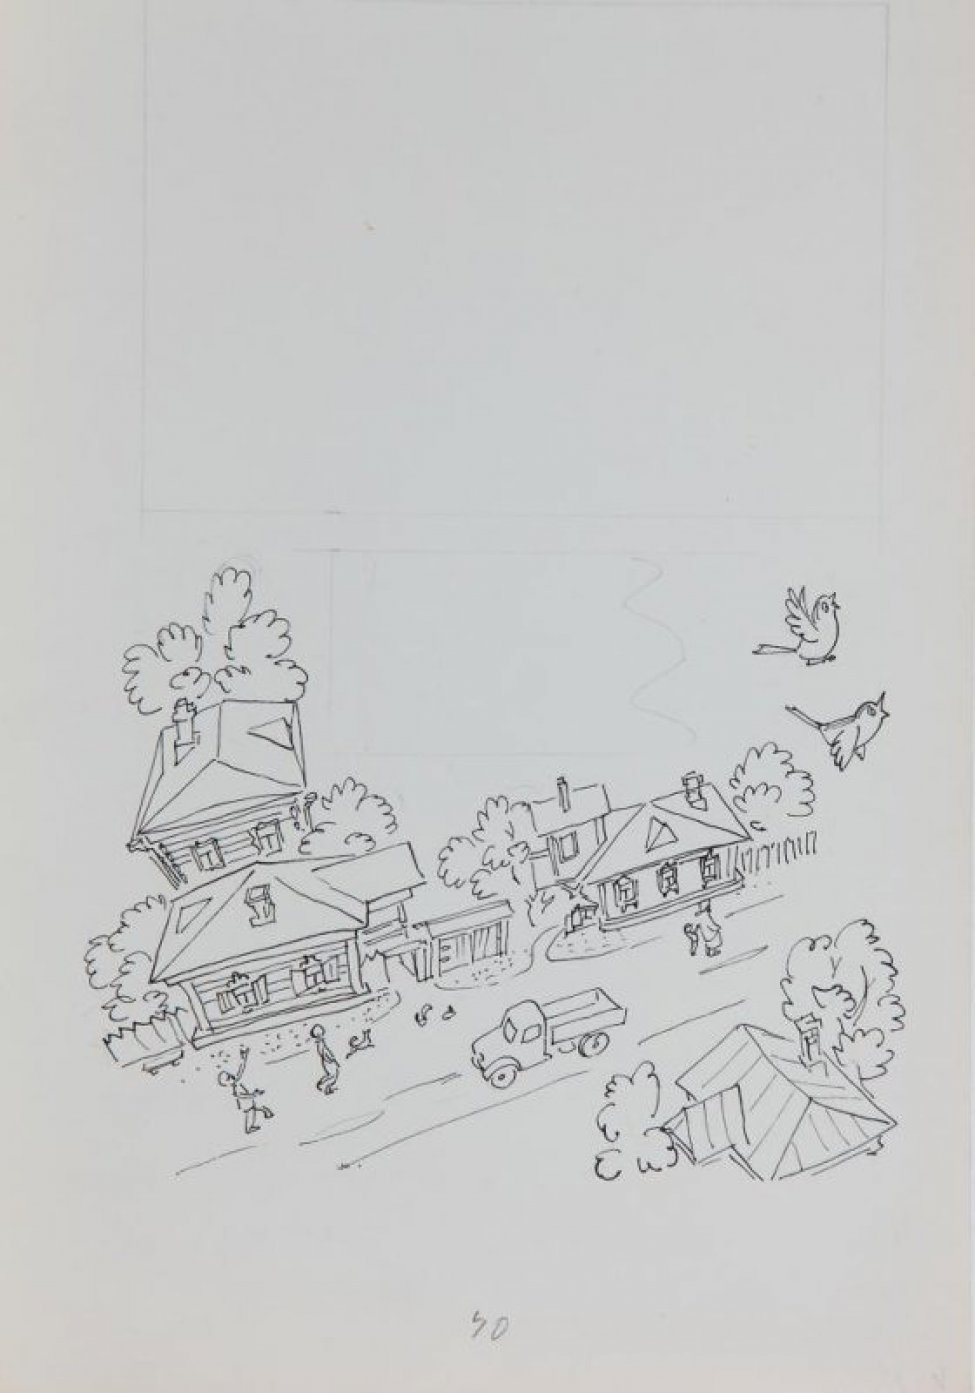 Стилизованное изображение (вид сверху) деревенской улицы, по которой бегут дети, идет старушка с ребенком, и движется грузовик; над улицей летят два воробья. Над изображением - разметка карандашом.